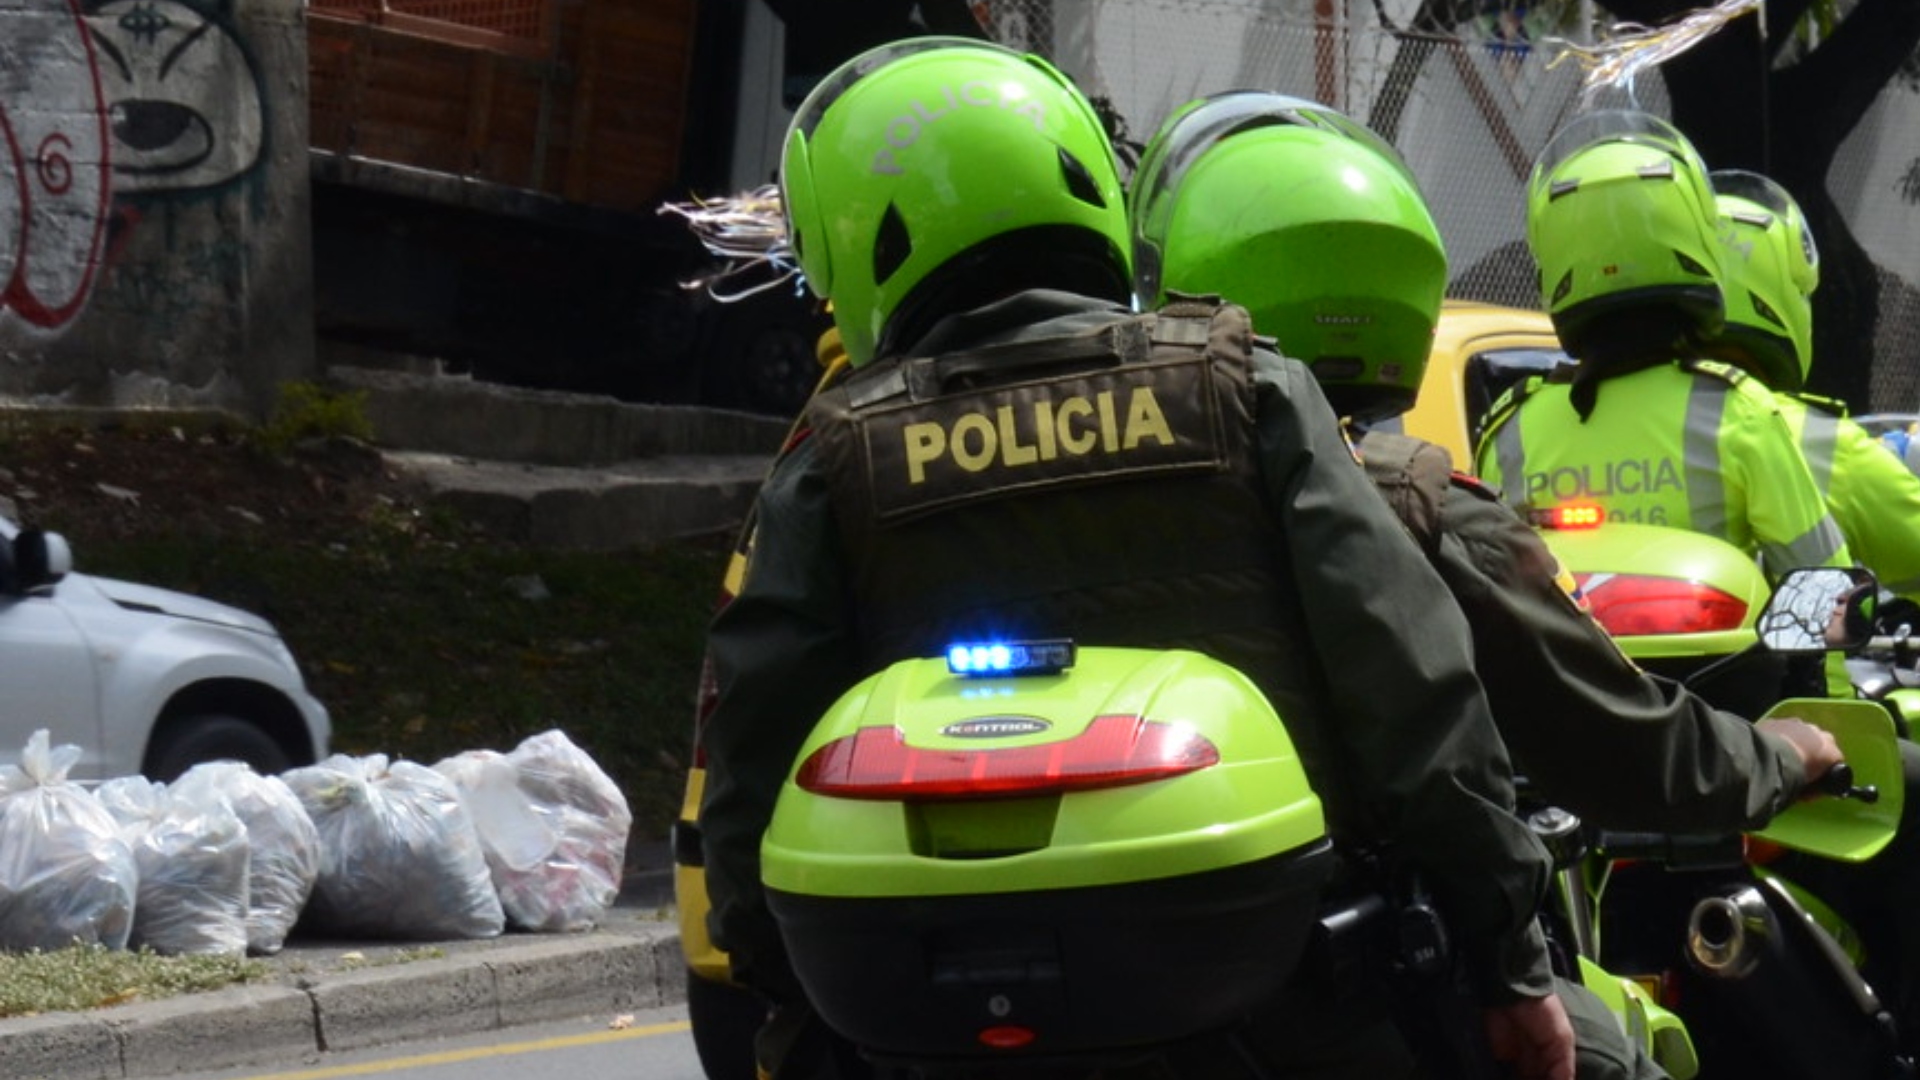 Imagen de referencia. Dos patrulleros de la Policía Nacional resultaron heridos tras un ataque armado en Cúcuta, Norte de Santander. Policía Nacional